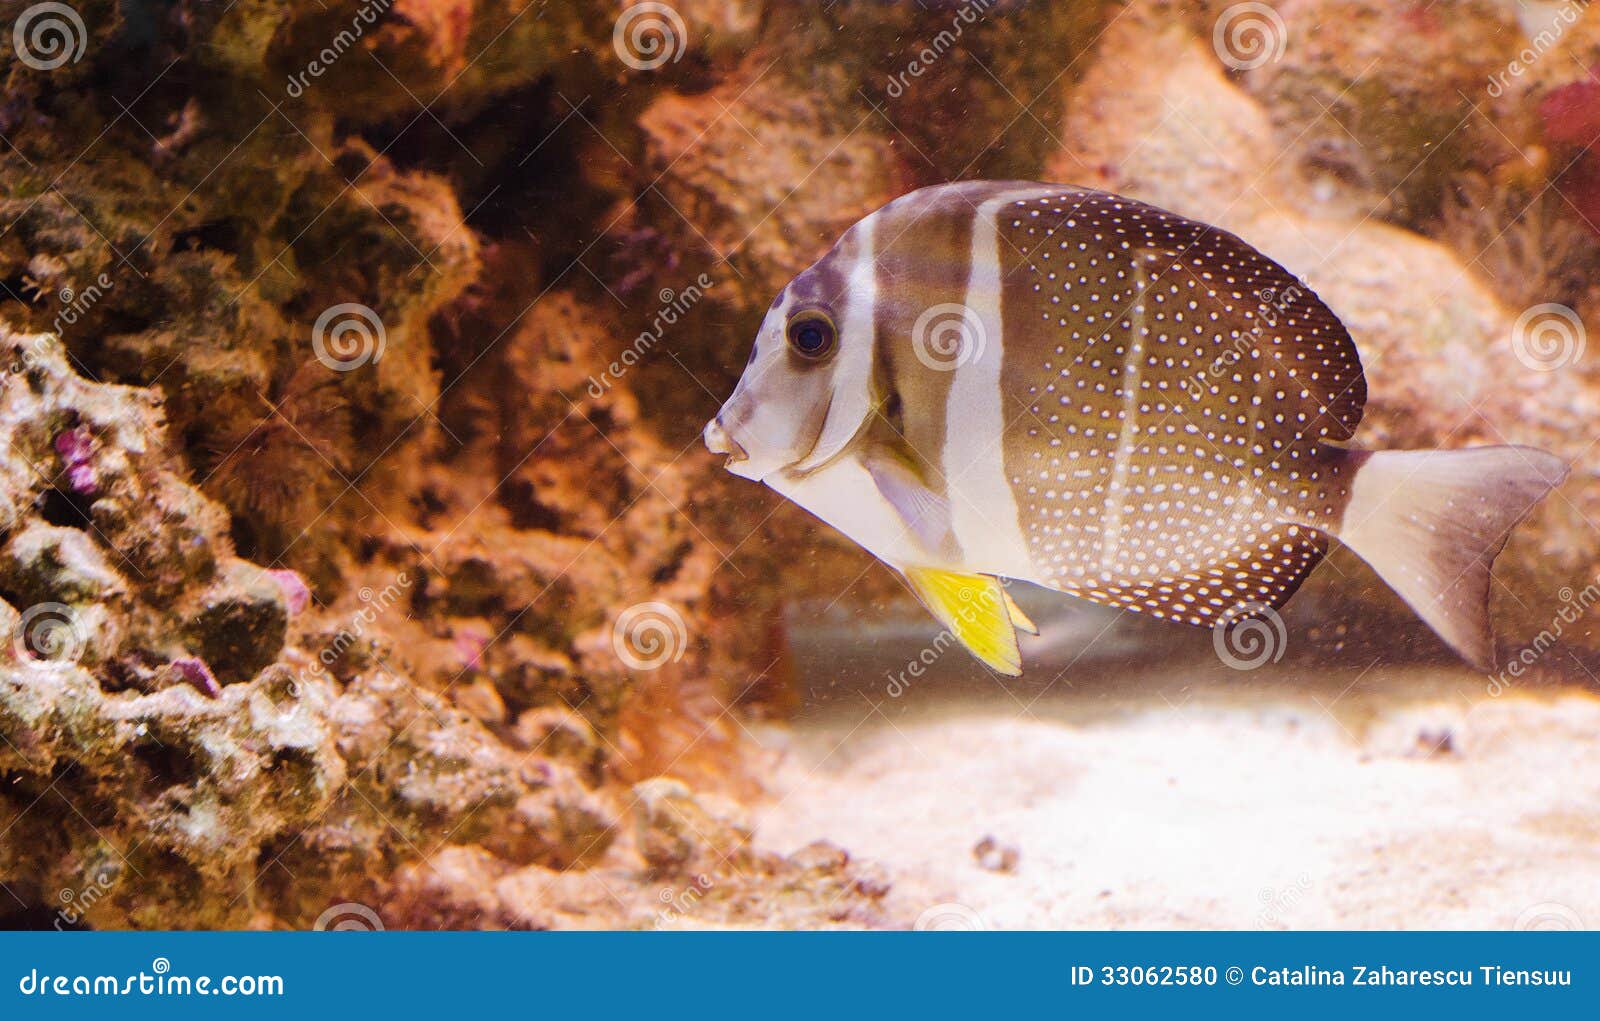 whitespotted surgeonfish